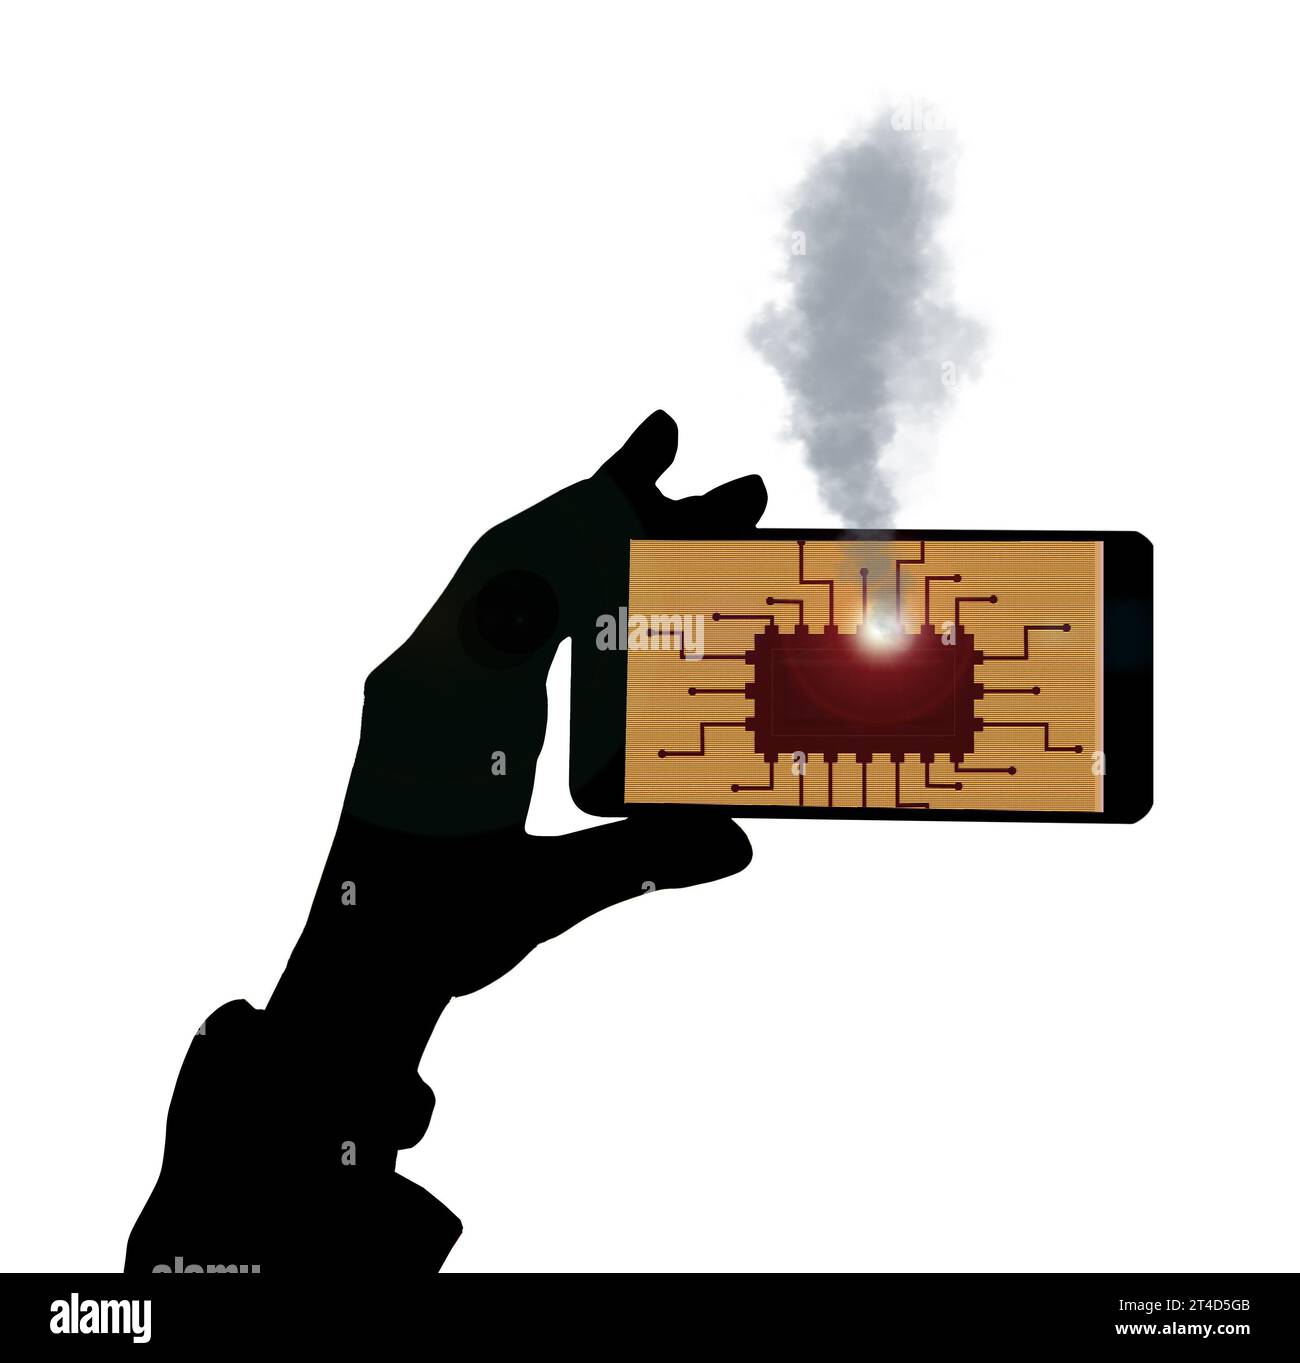 Ein Mobiltelefon hat einen elektronischen Defekt und ein Chip geht in einer 3D-Abbildung in Rauch auf. Stockfoto